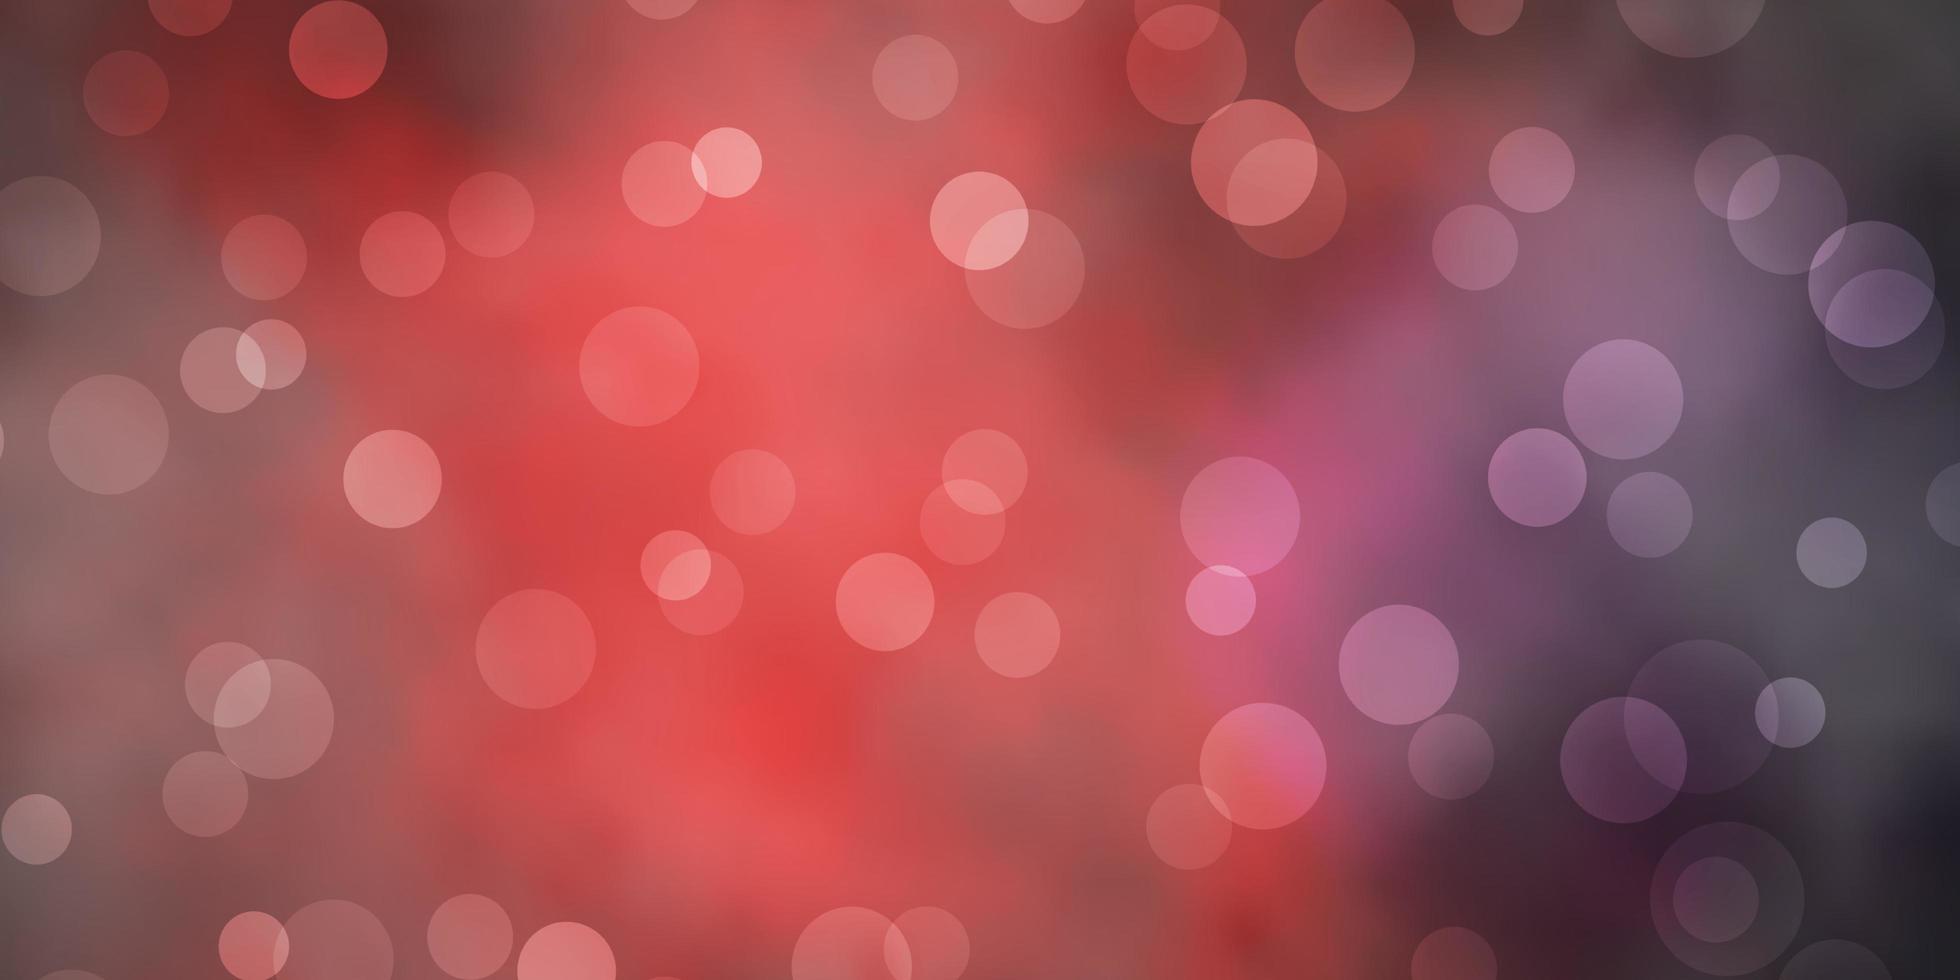 Fondo de vector azul oscuro, rojo con círculos. Ilustración abstracta de brillo con gotas de colores. patrón para fondos de pantalla, cortinas.